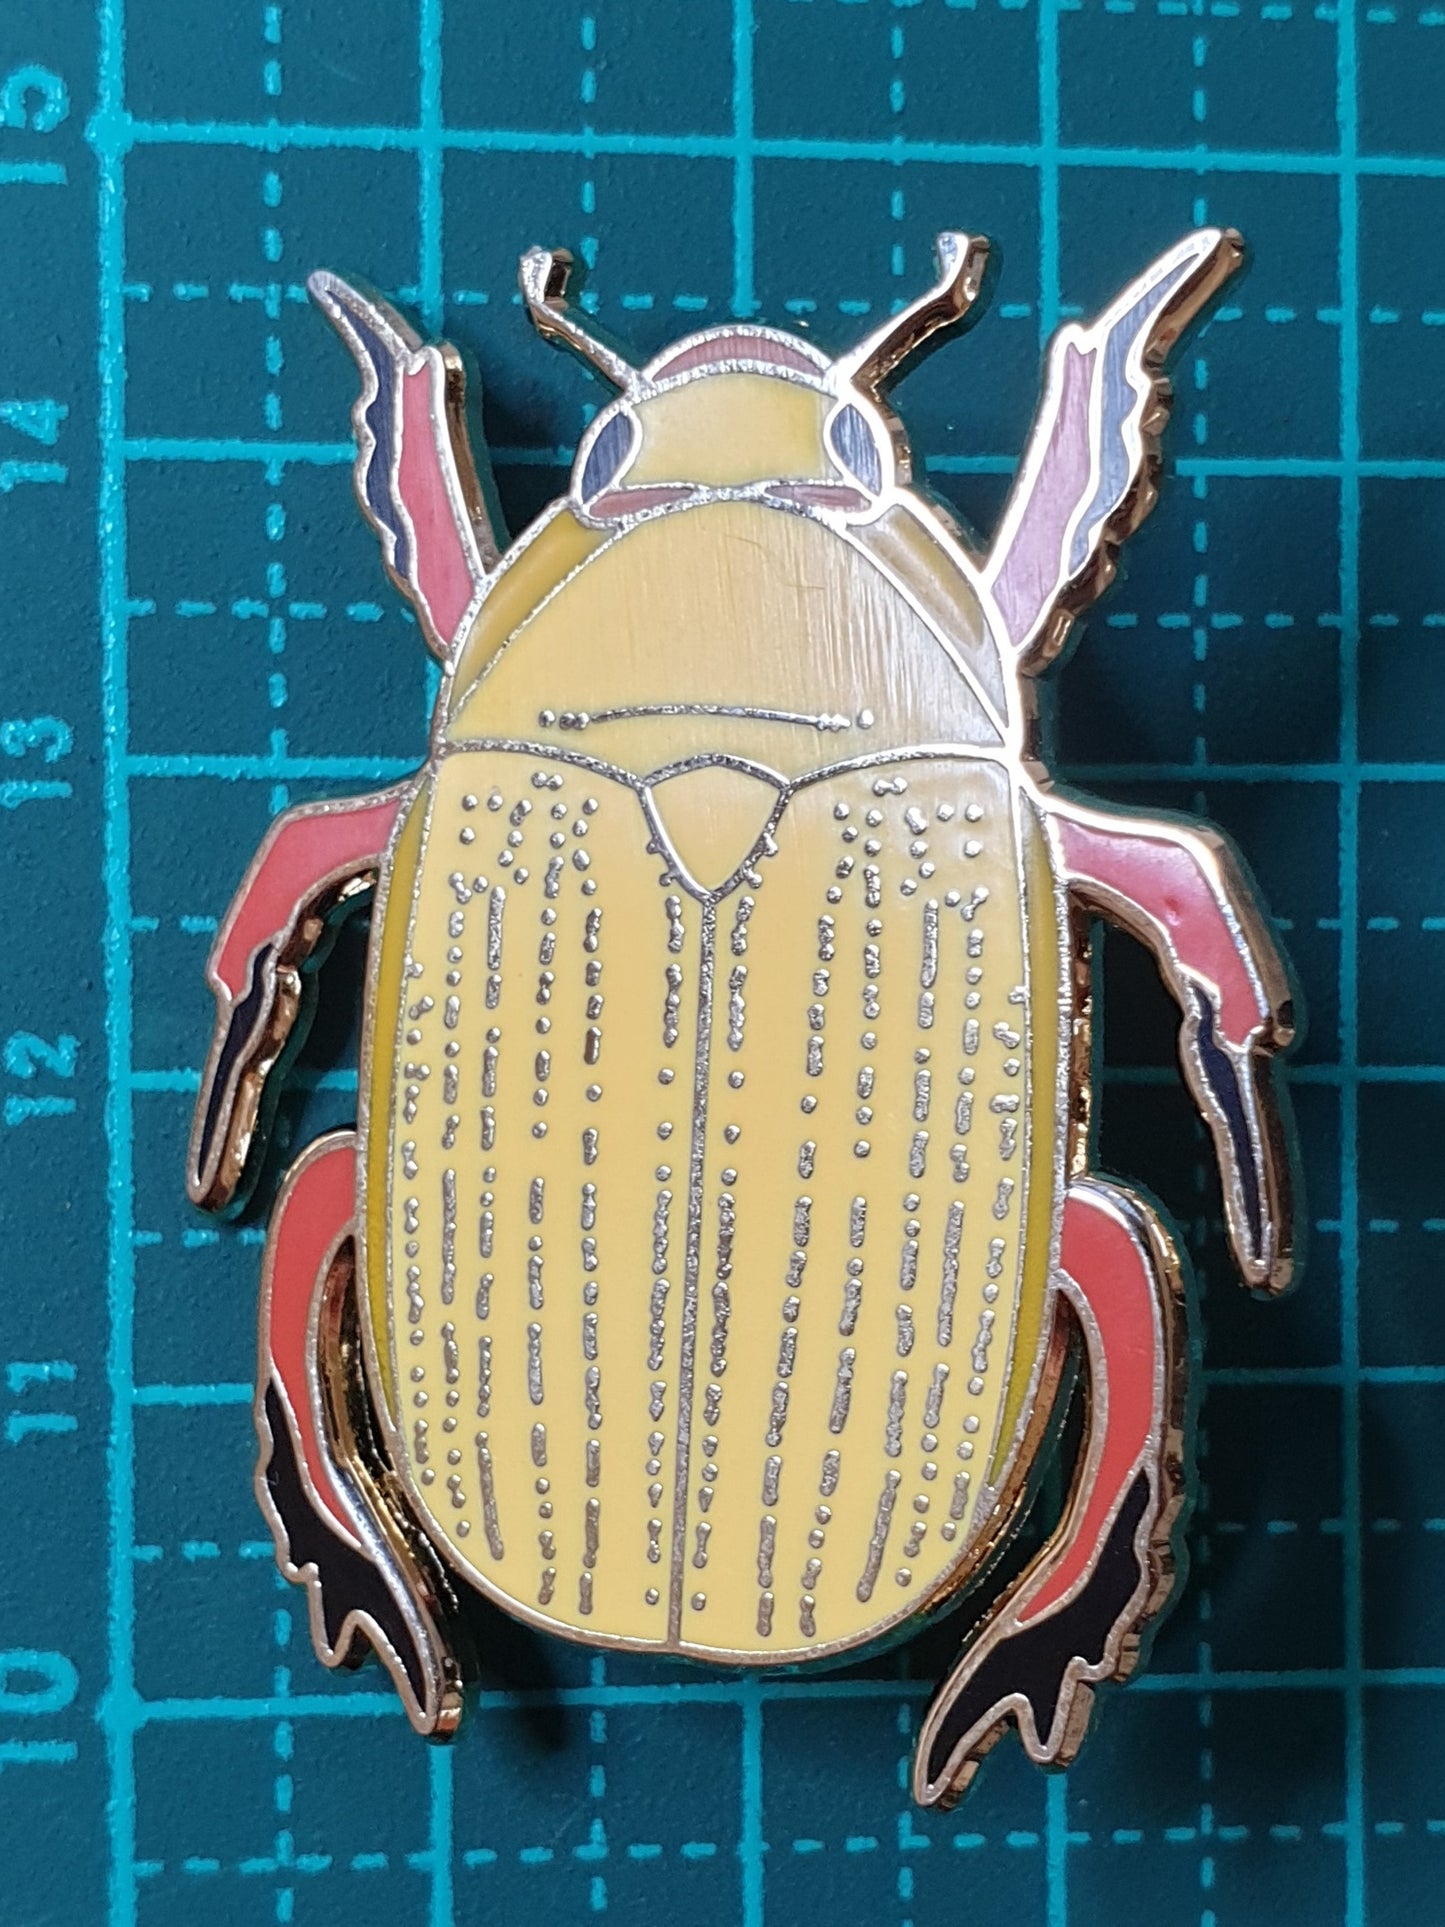 Christmas Beetle Pin